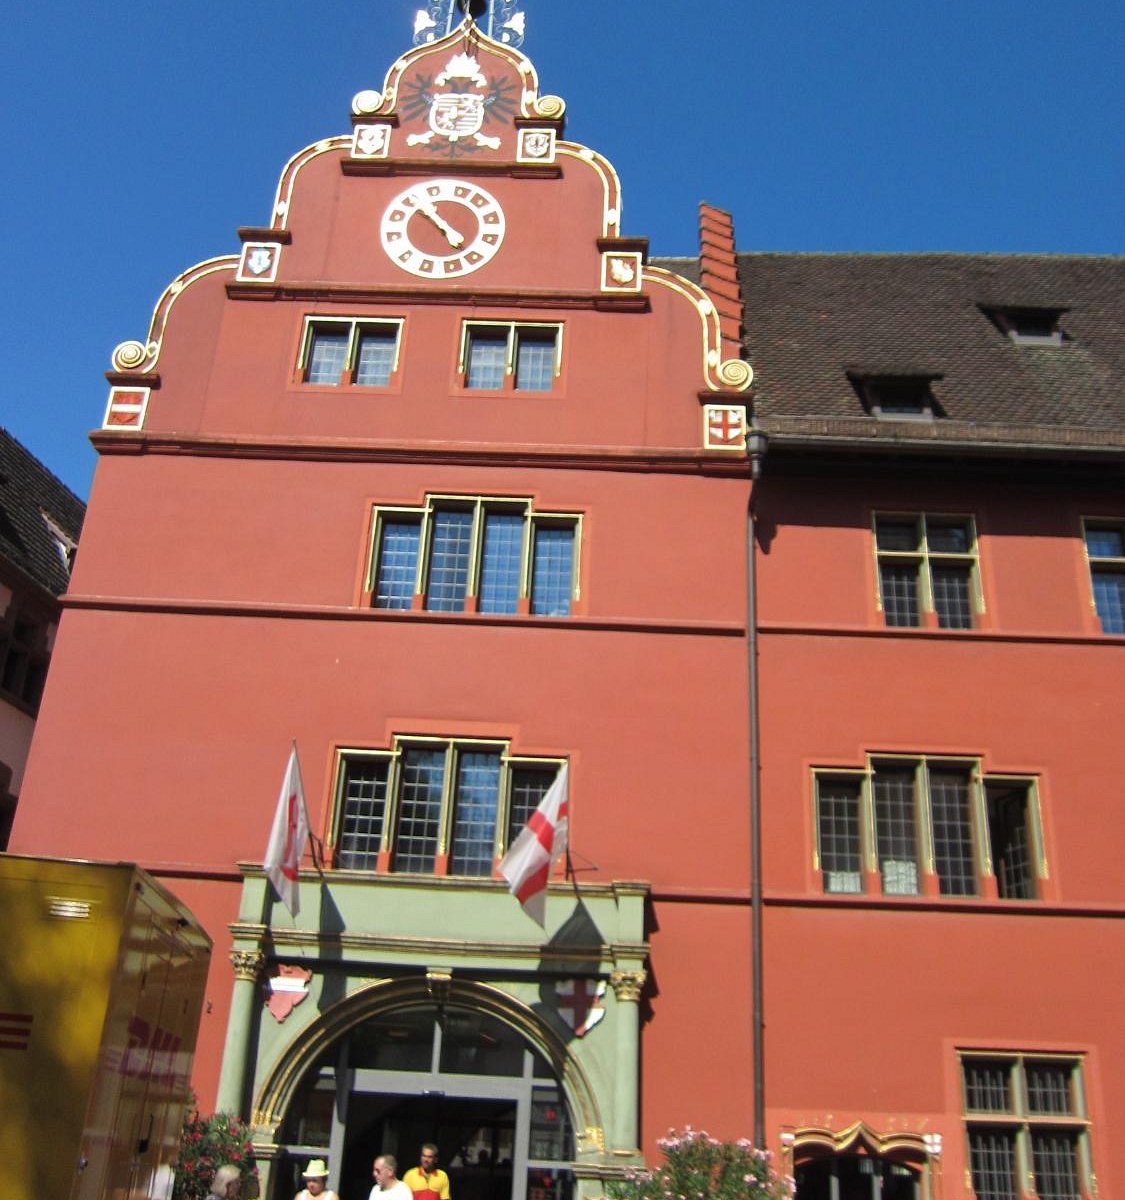 freiburg tourism office